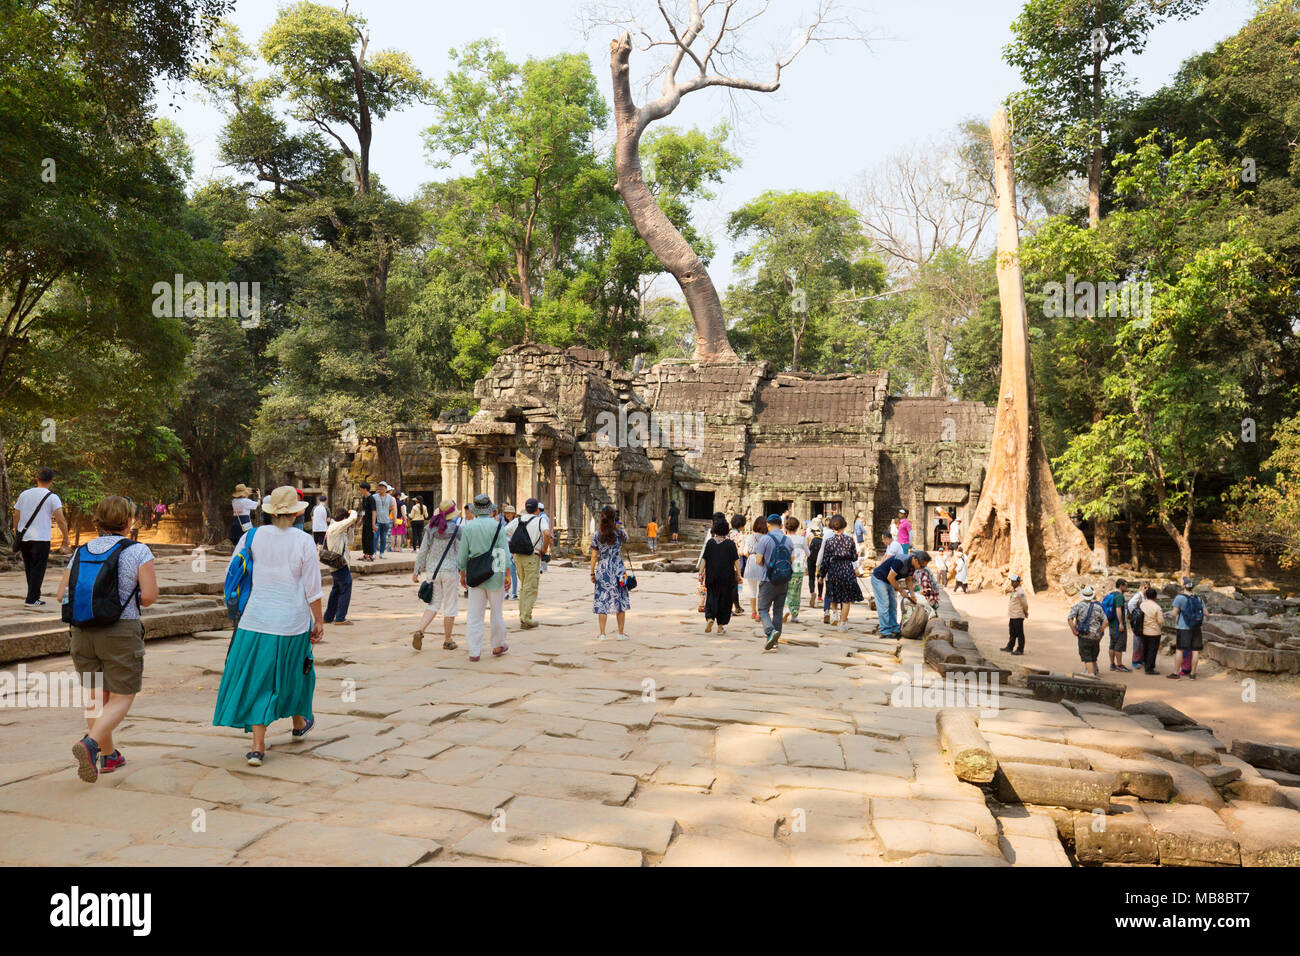 Cambodge les touristes à Ta Prohm temple Angkor, site du patrimoine mondial de l'Asie, Cambodge Banque D'Images